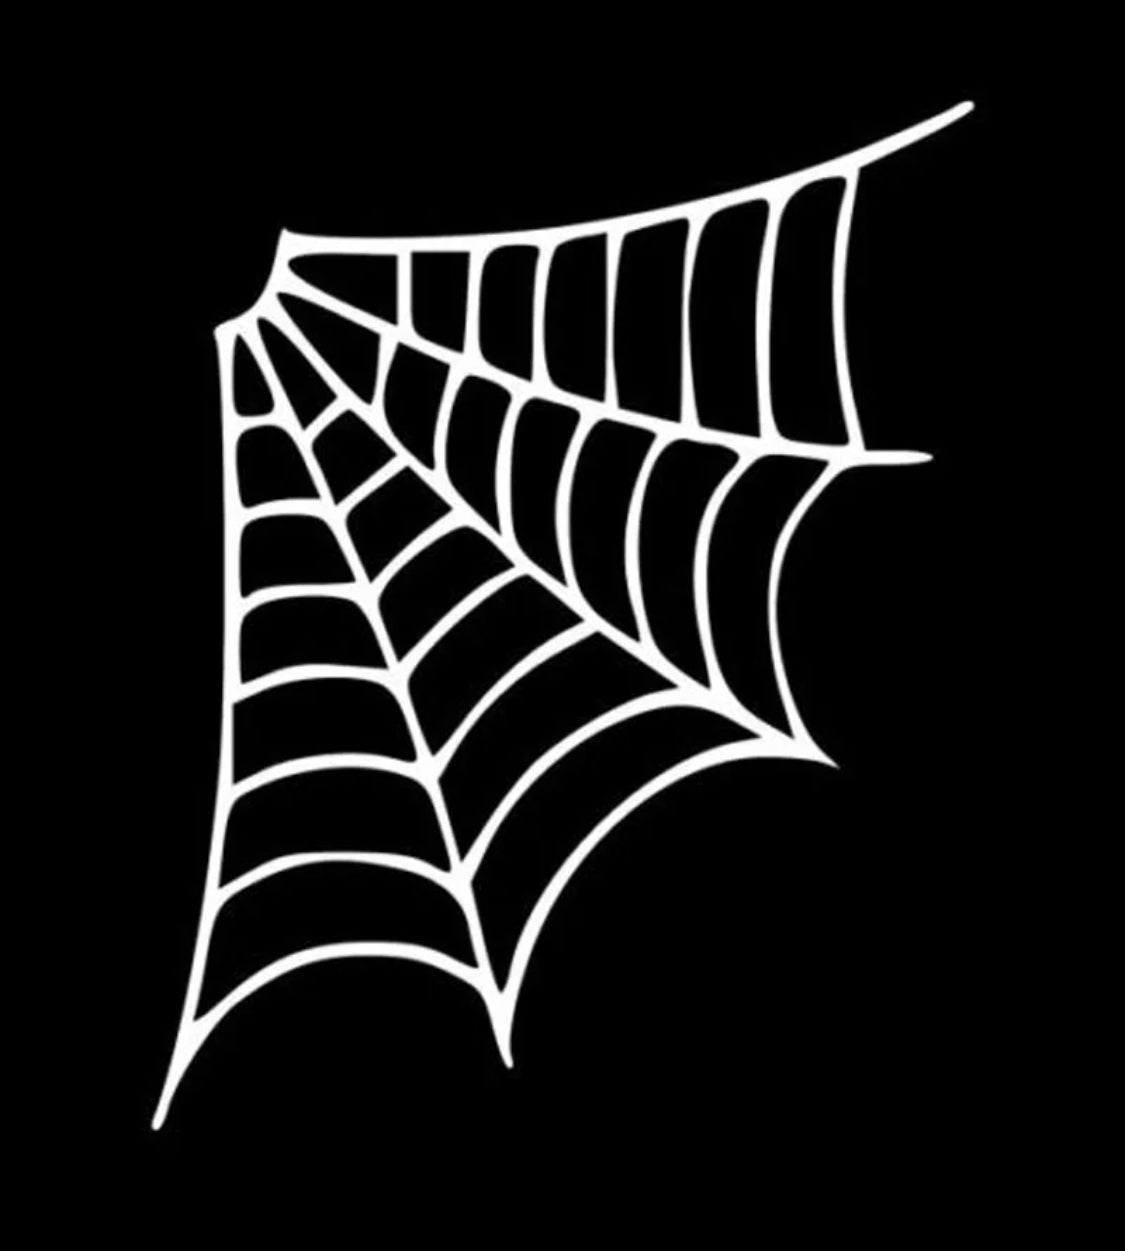 Spiderweb Wall Sticker #2